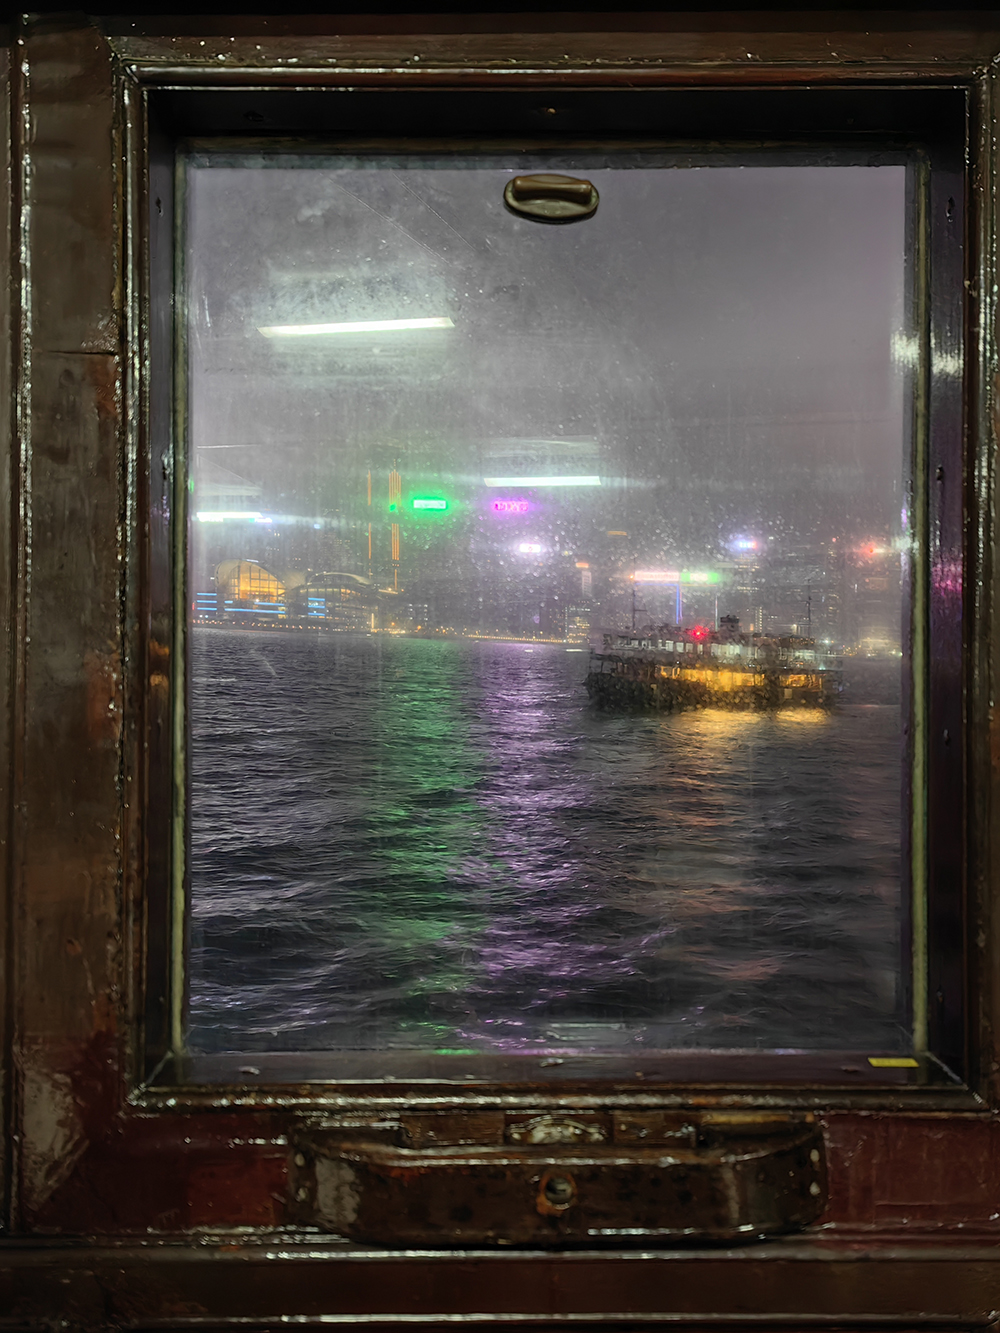 Вид из окна «Стар Ферри» — парома, который курсирует между полуостровом Коулун и островом Гонконг. Можно доехать на метро, но паром быстрее и дешевле, плюс дарит больше впечатлений, особенно во время вечернего светового шоу